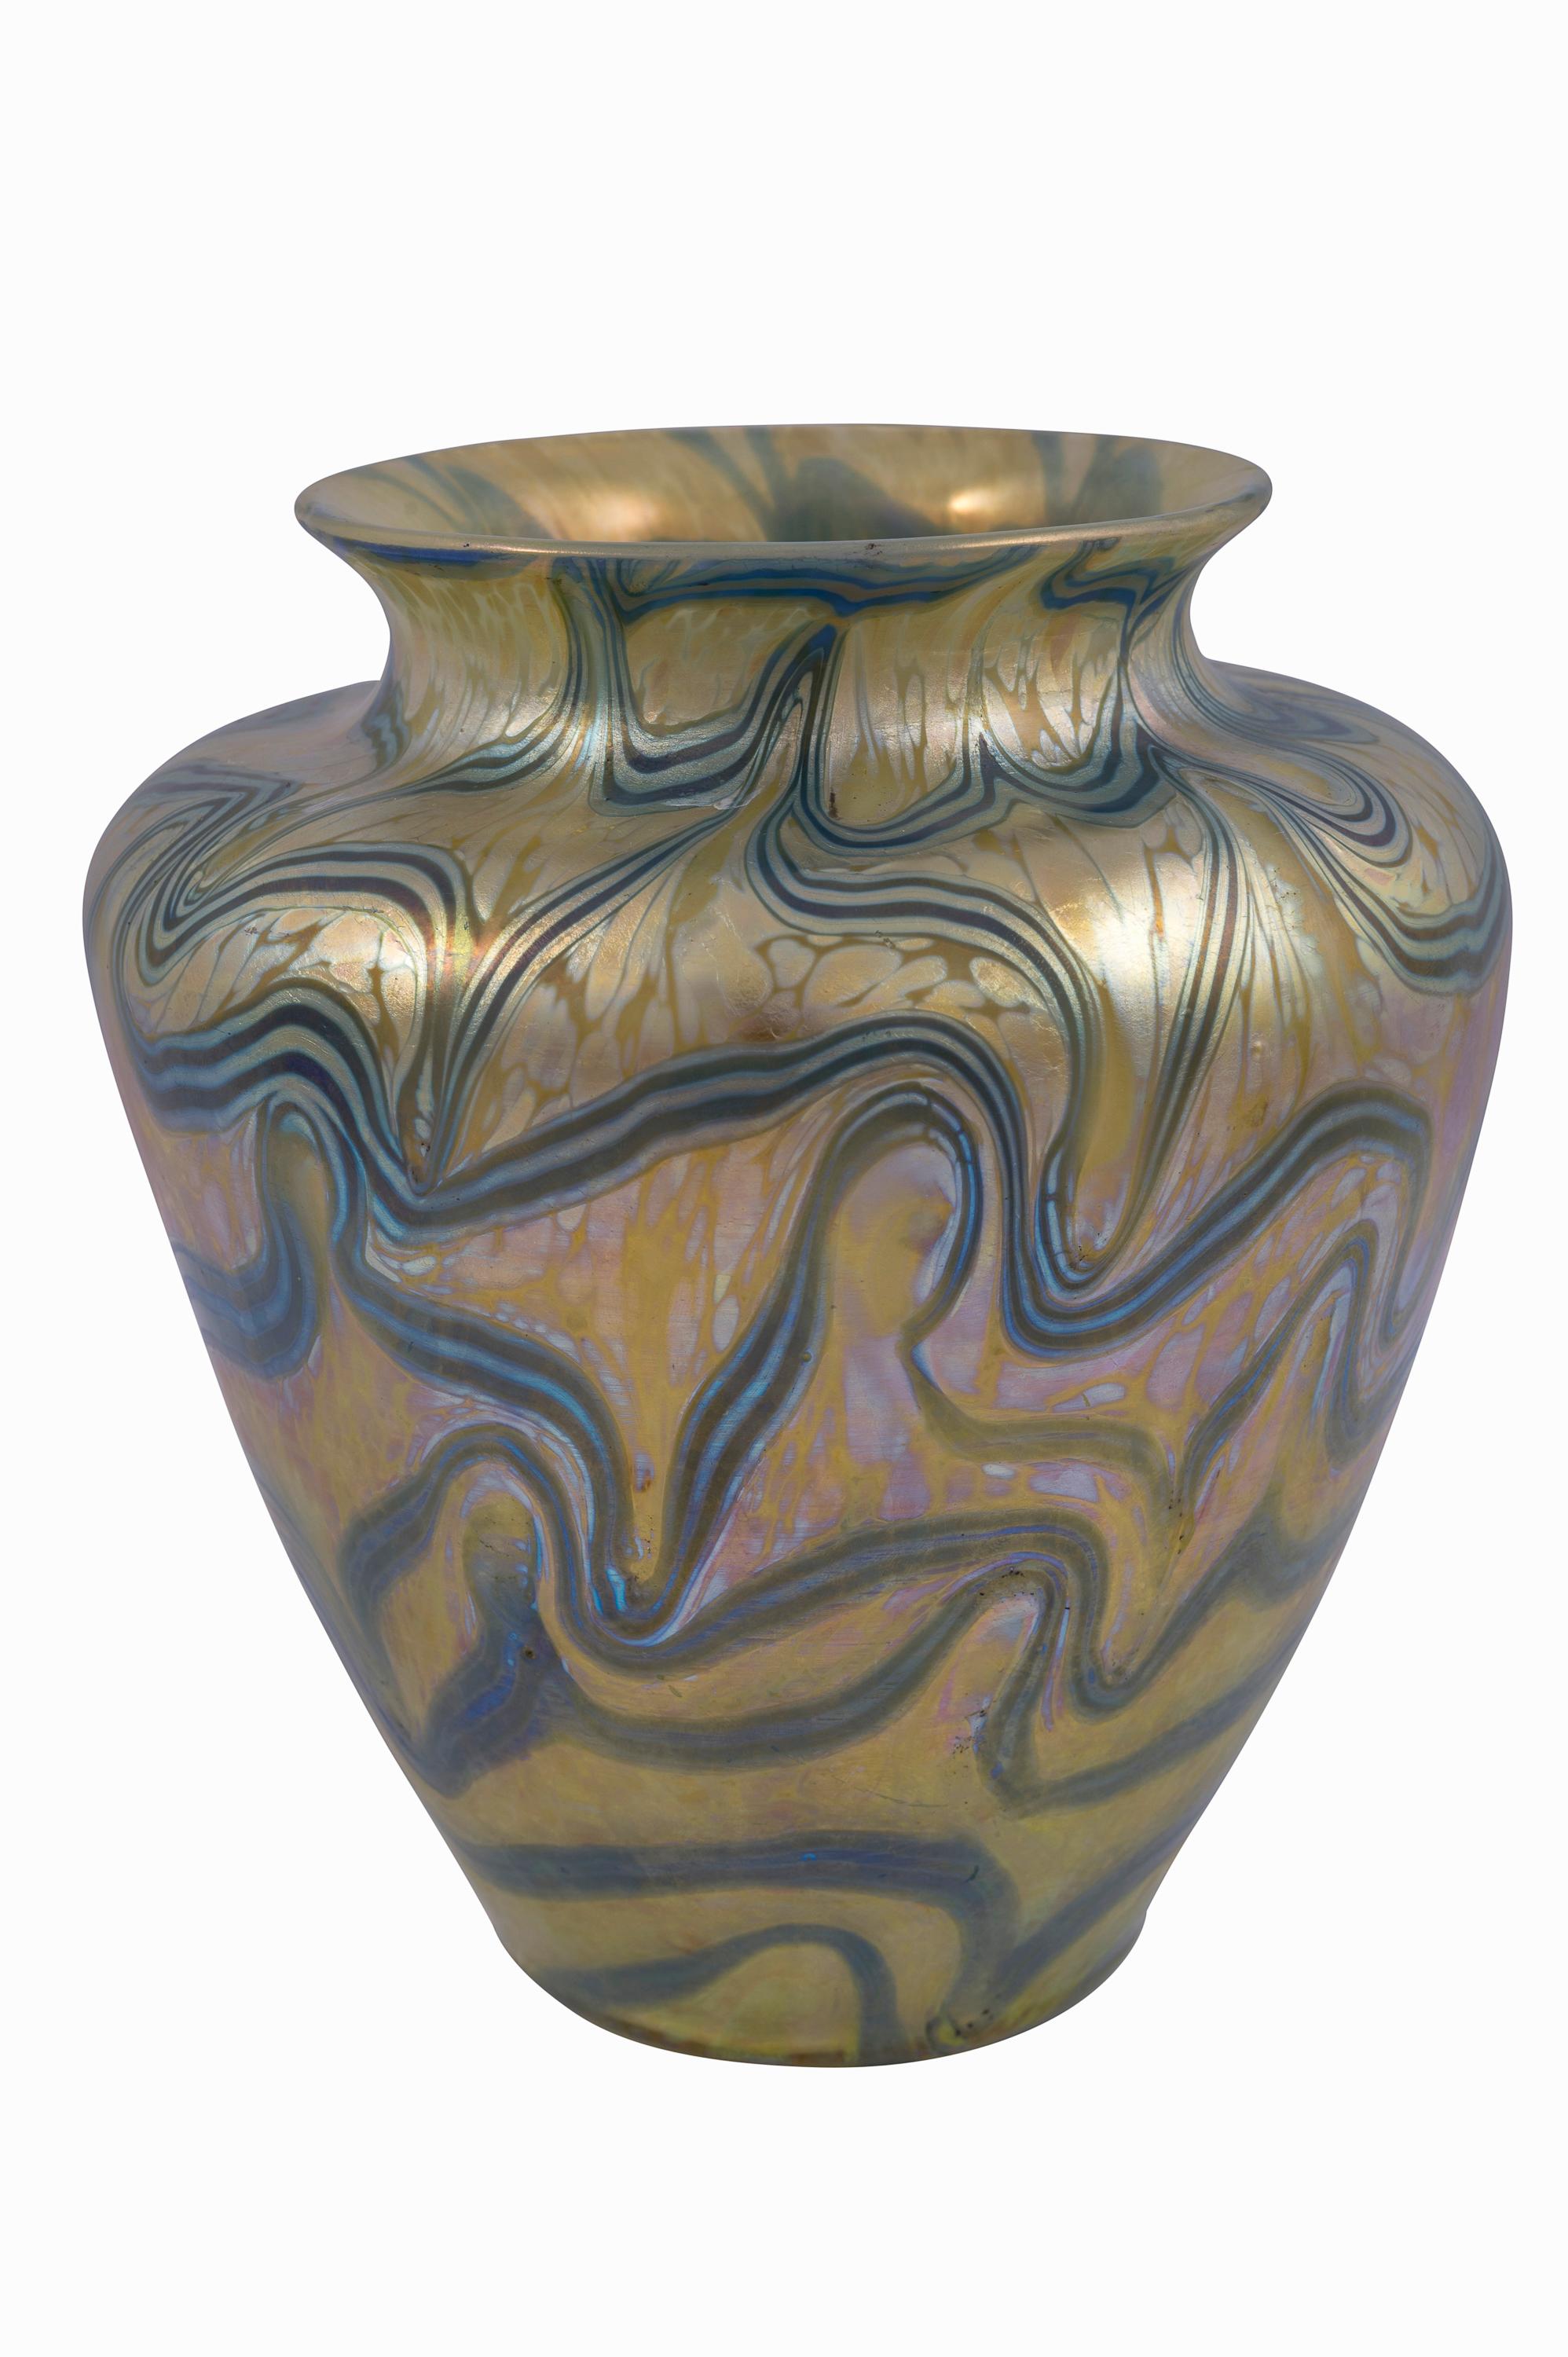 Jugendstil Bohemian Glass Vase Loetz PG 1/104 circa 1901 Viennese Art Nouveau signed For Sale